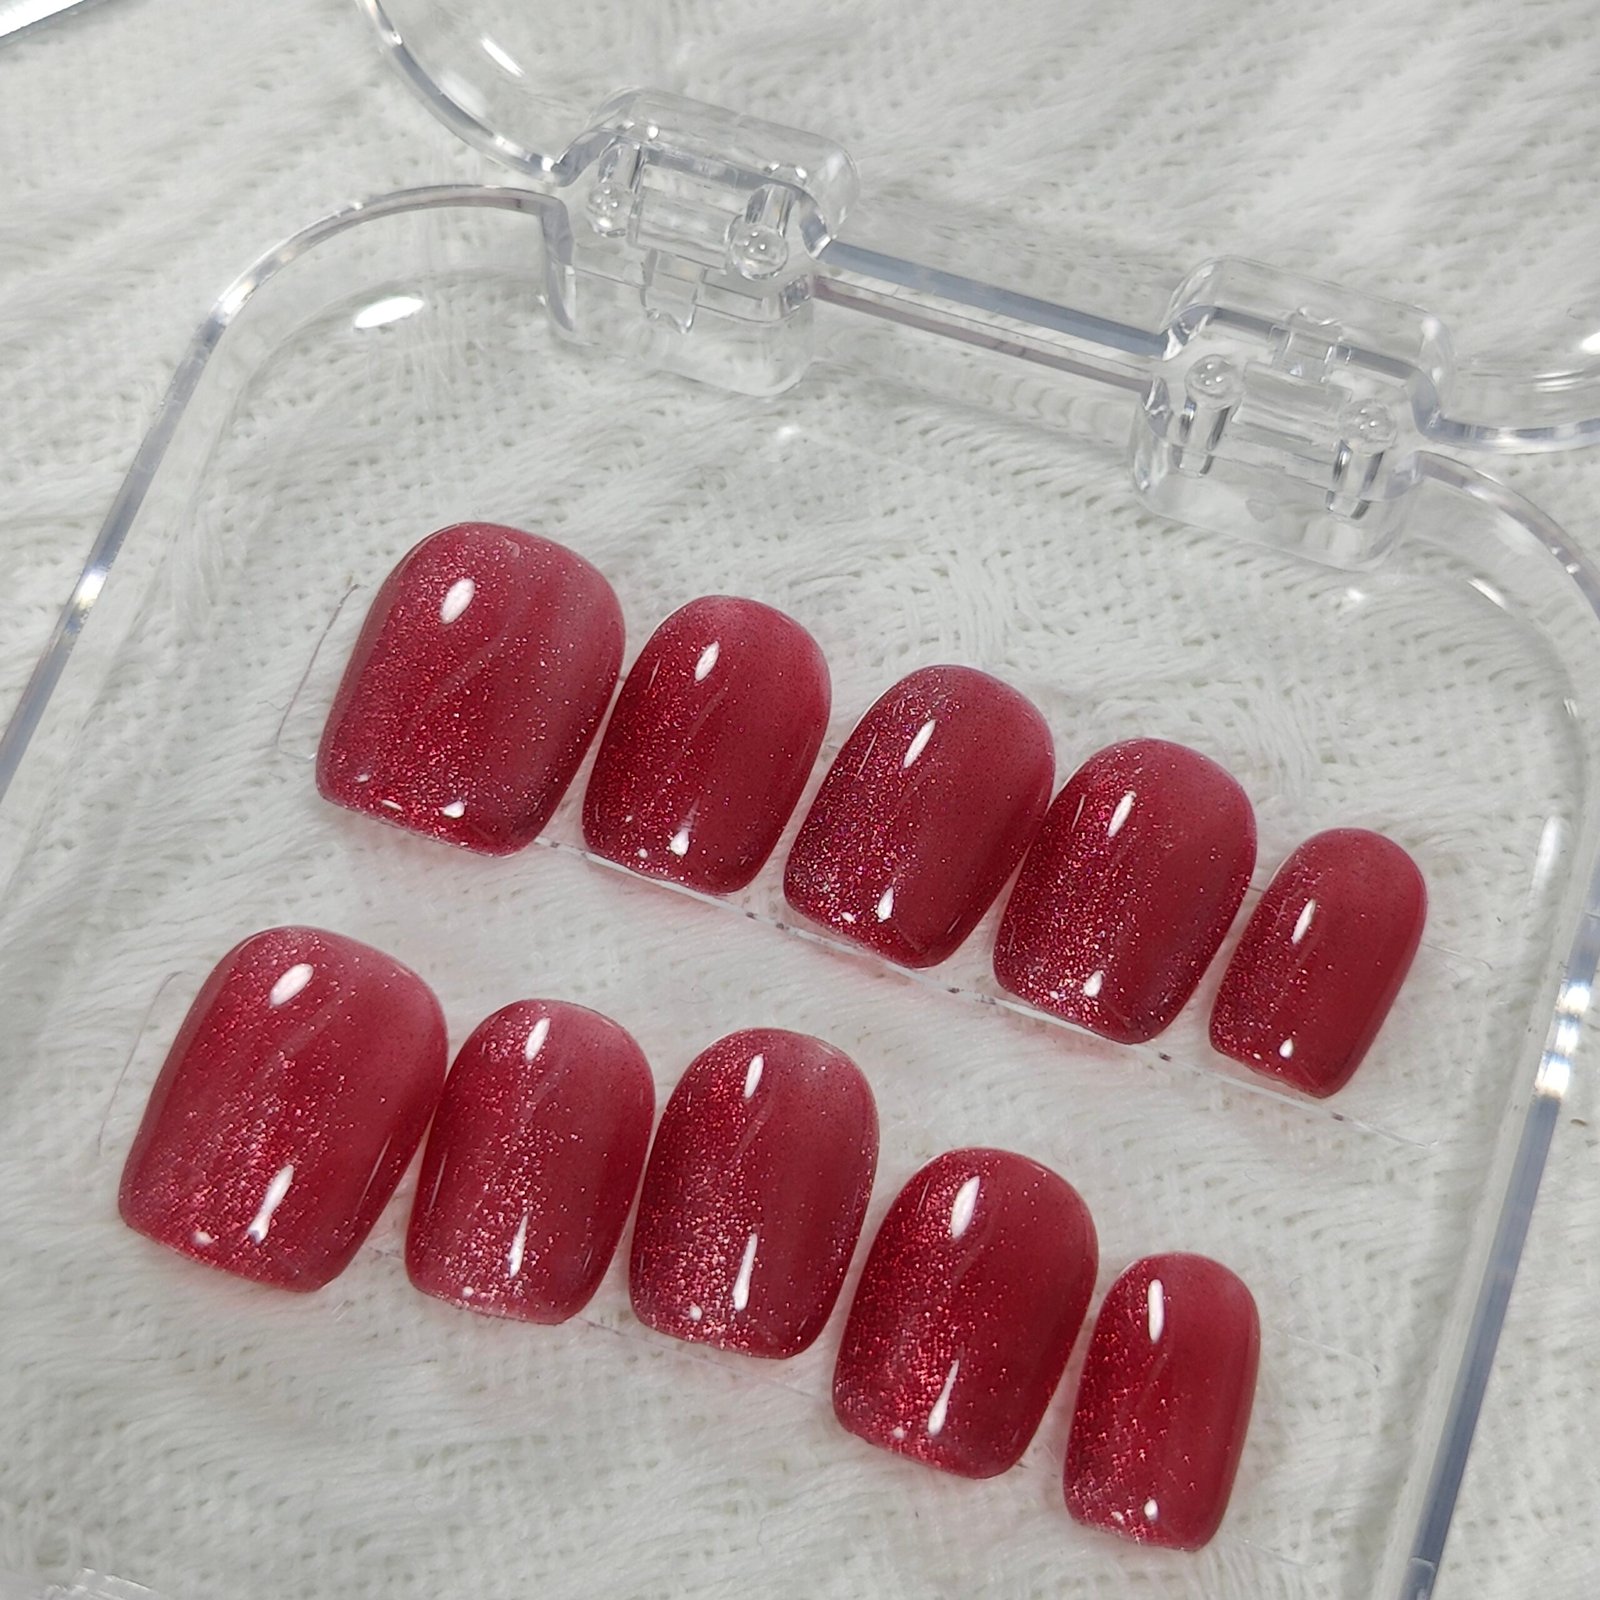 raspberry color velvet cat eye short coffin press on nails